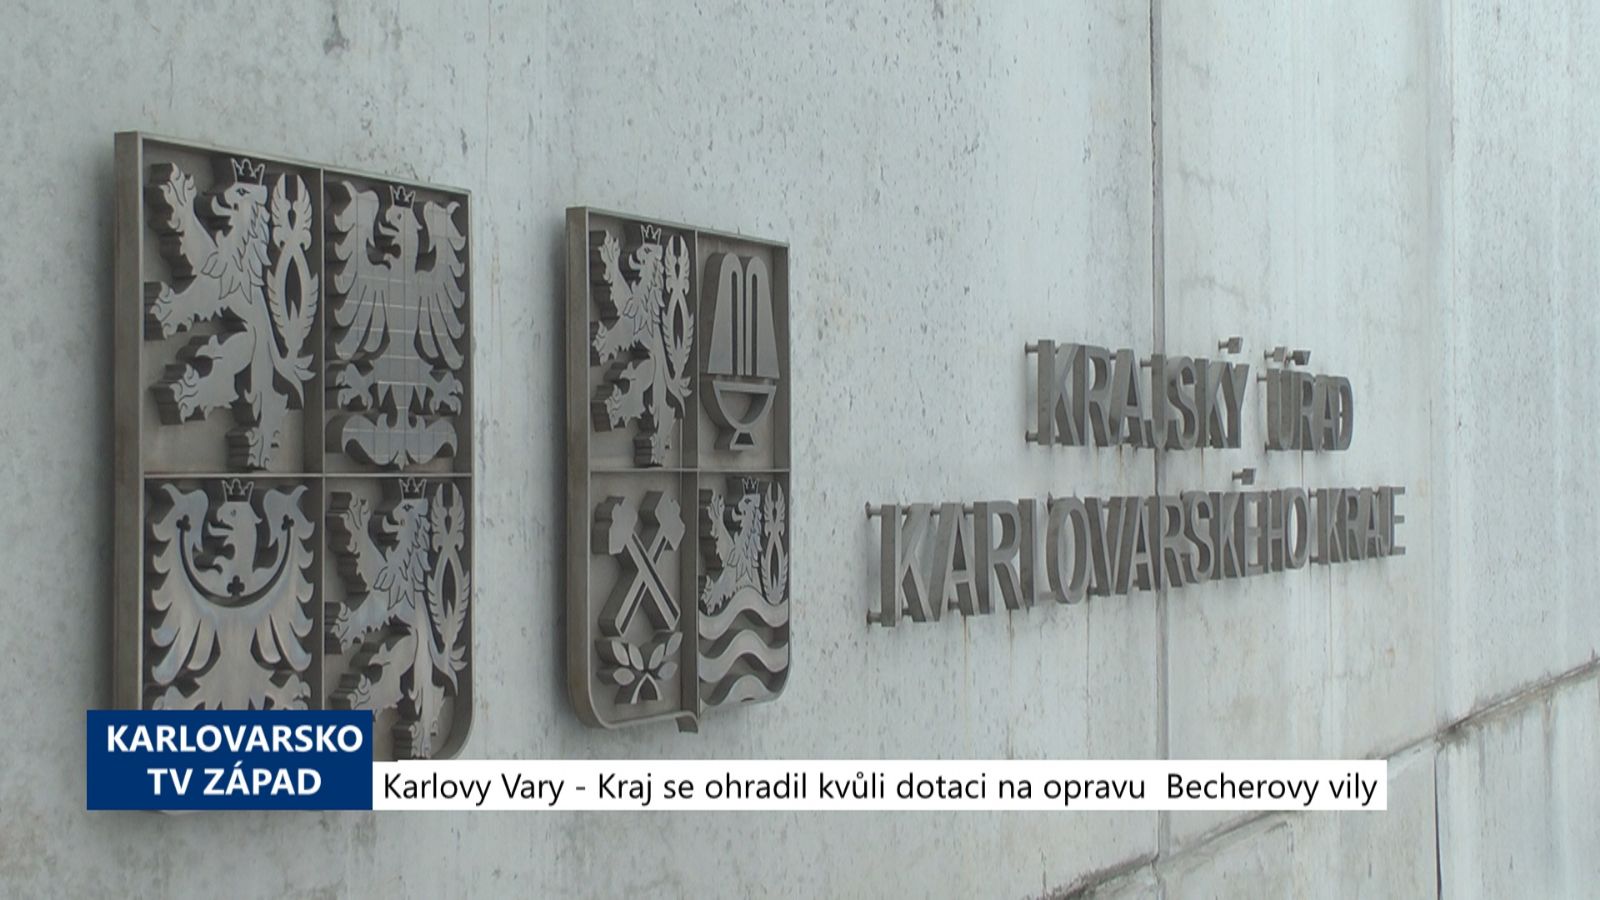 Karlovy Vary: Kraj se ohradil kvůli dotaci na opravu Becherovy vily (TV Západ)